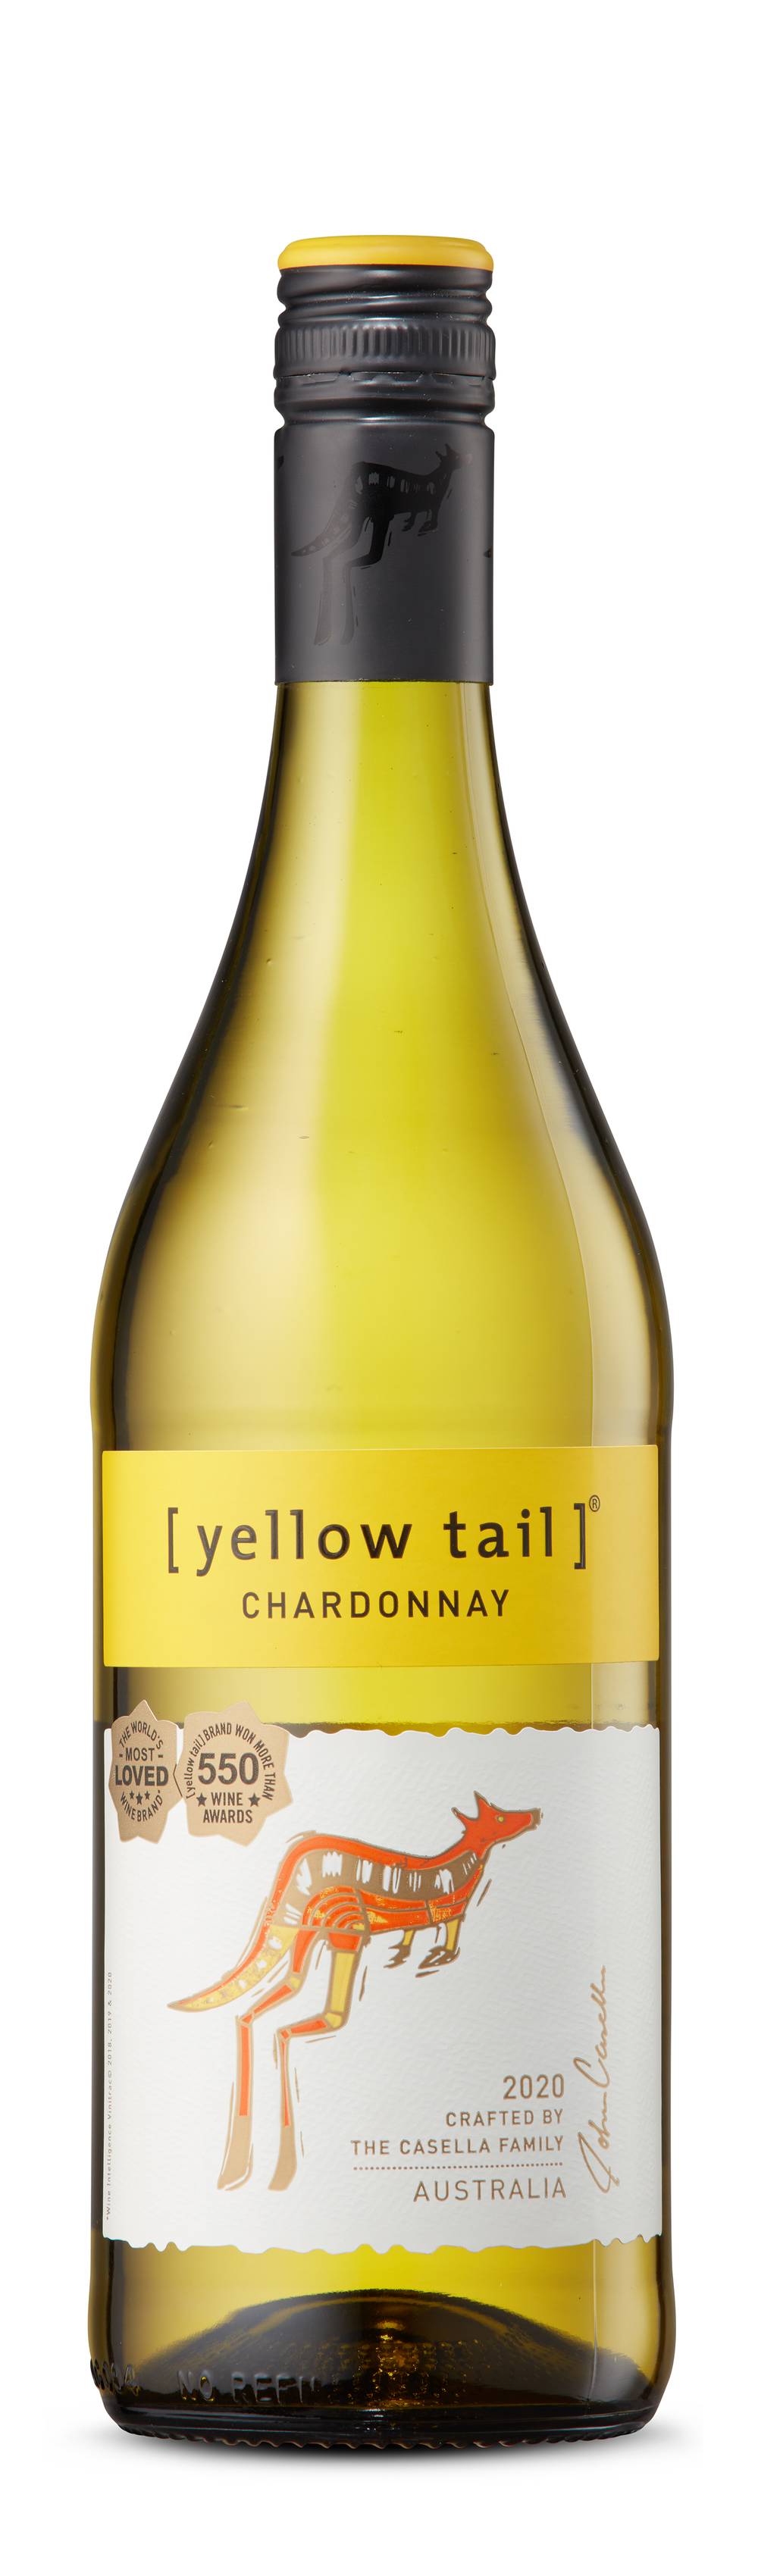 Yellow Tail Australia Chardonnay White Wine 2020 (750 ml)